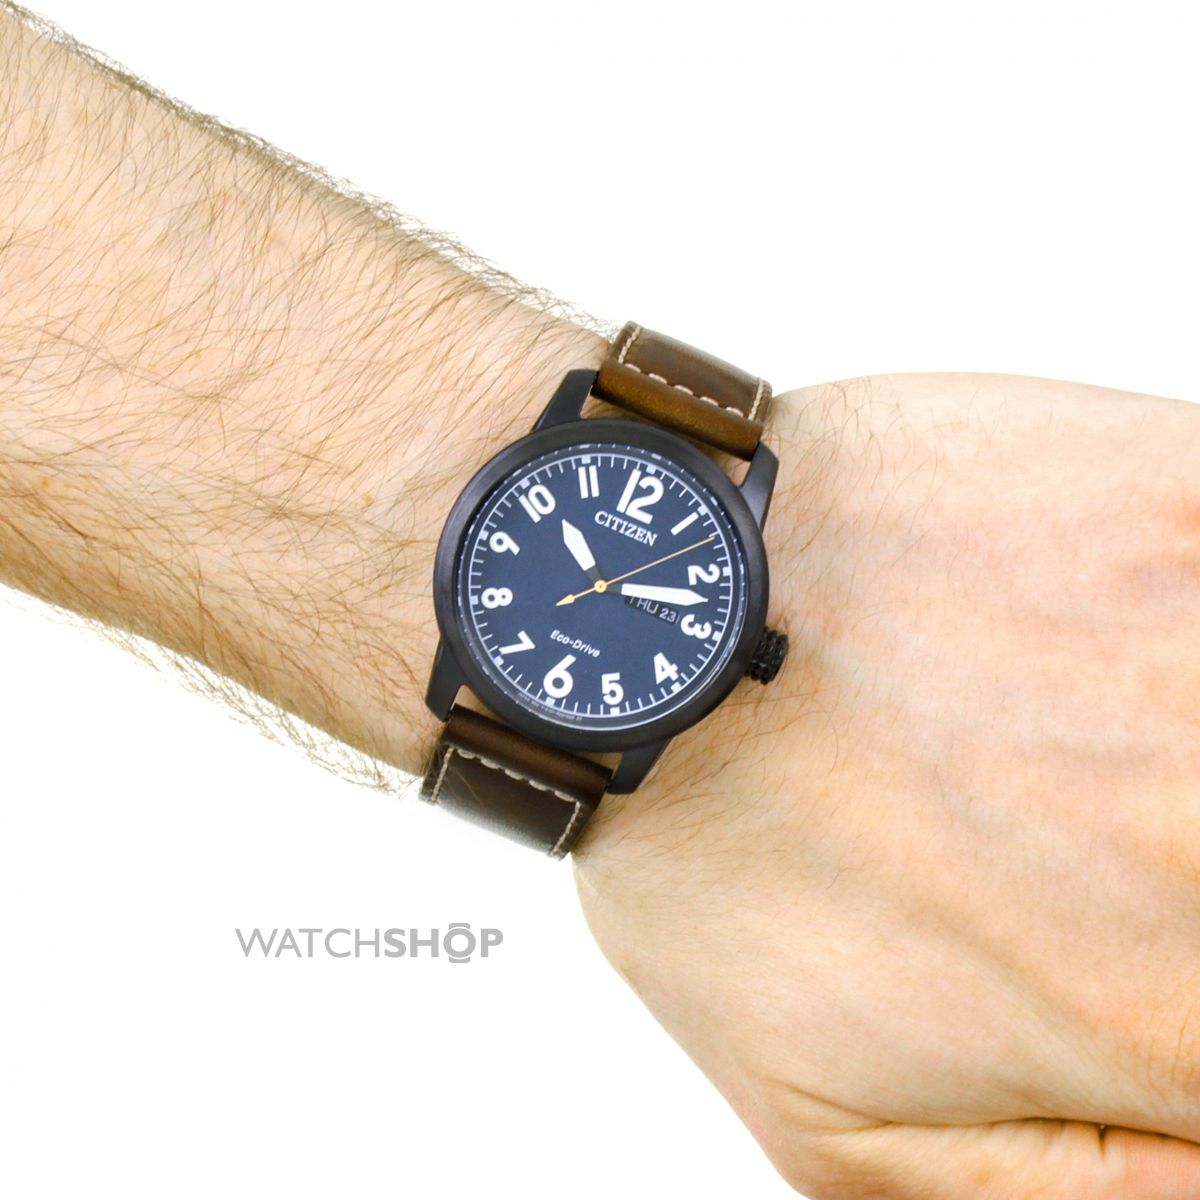 オフィスシチズン CITIZEN 腕時計 メンズ BM8478-01L ECO-DRIVE エコドライブ クォーツ ネイビー ダークブラウン アテッサ